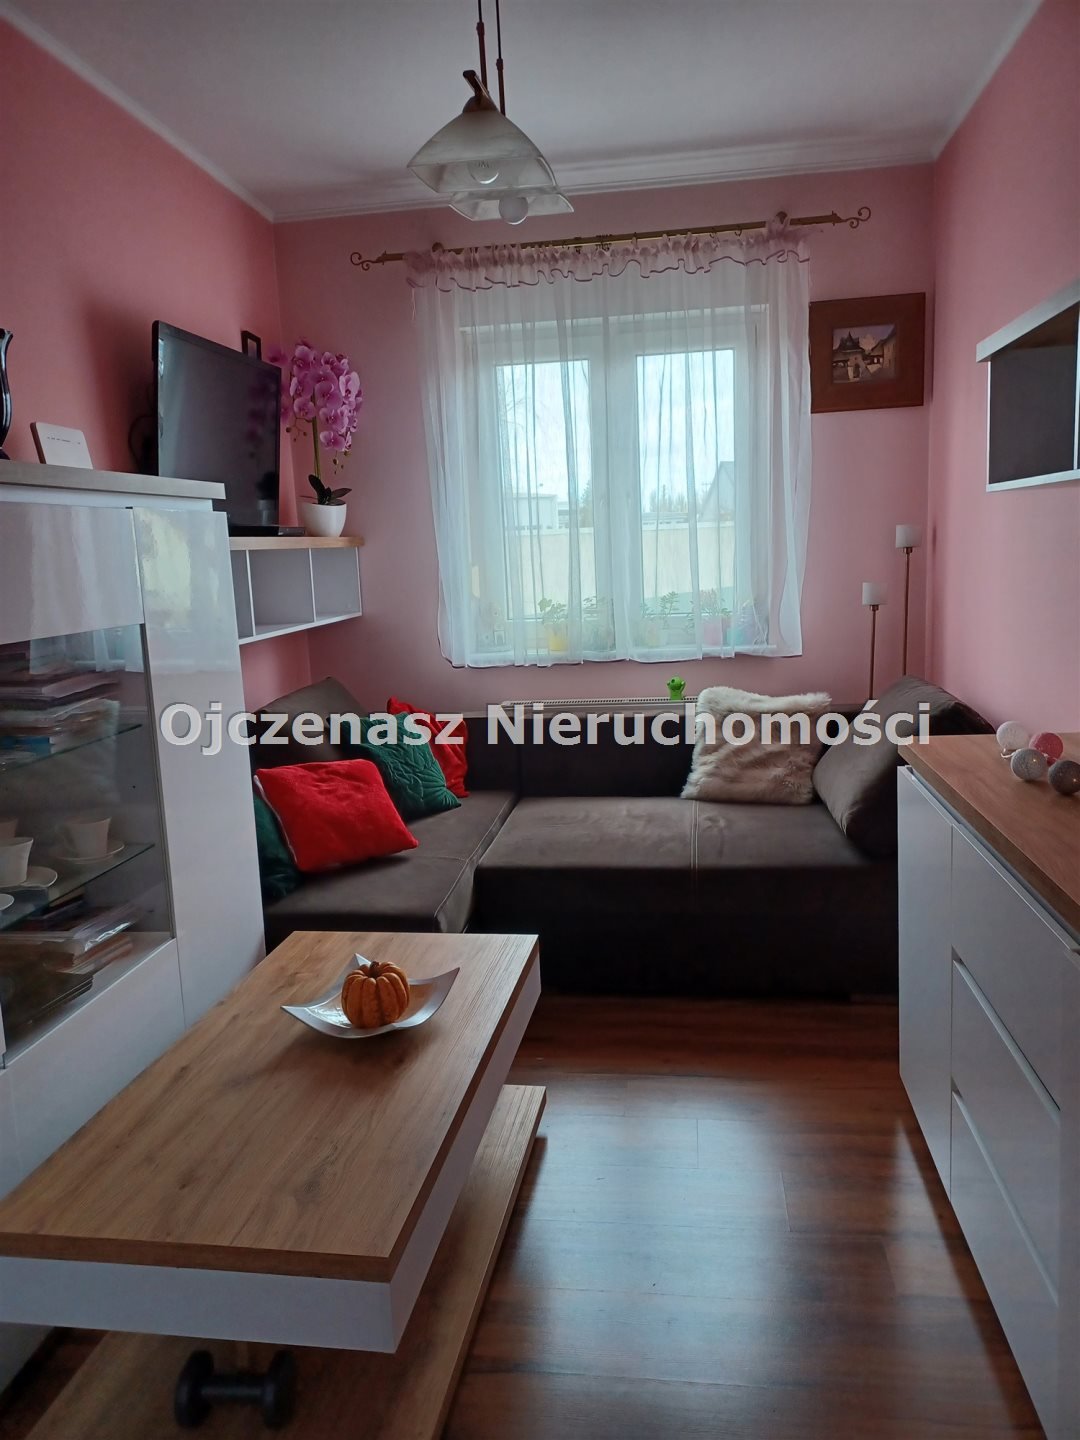 Mieszkanie trzypokojowe na sprzedaż Bydgoszcz, Osowa Góra  83m2 Foto 12